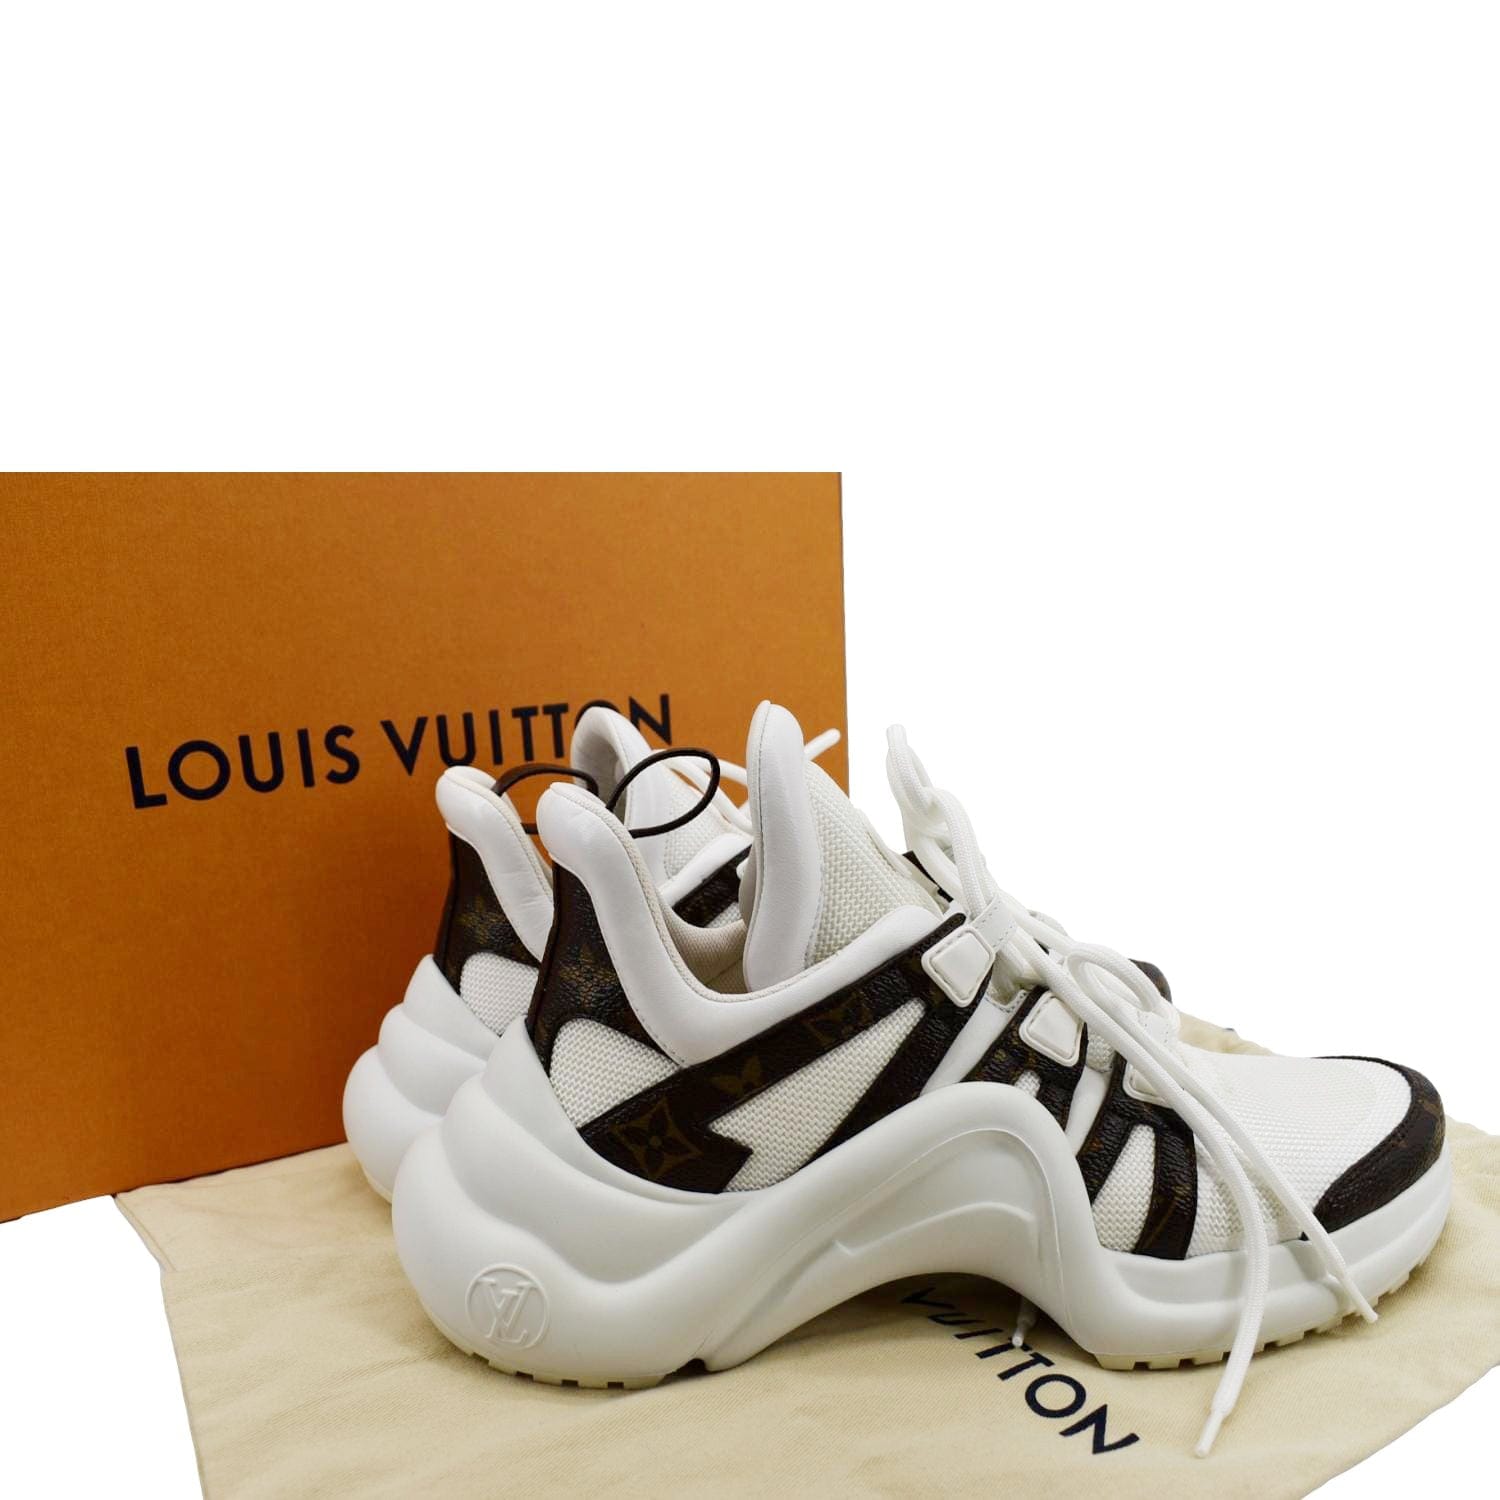 Louis Vuitton, Shoes, Authentic Louis Vuitton Archlight Womens Sneaker